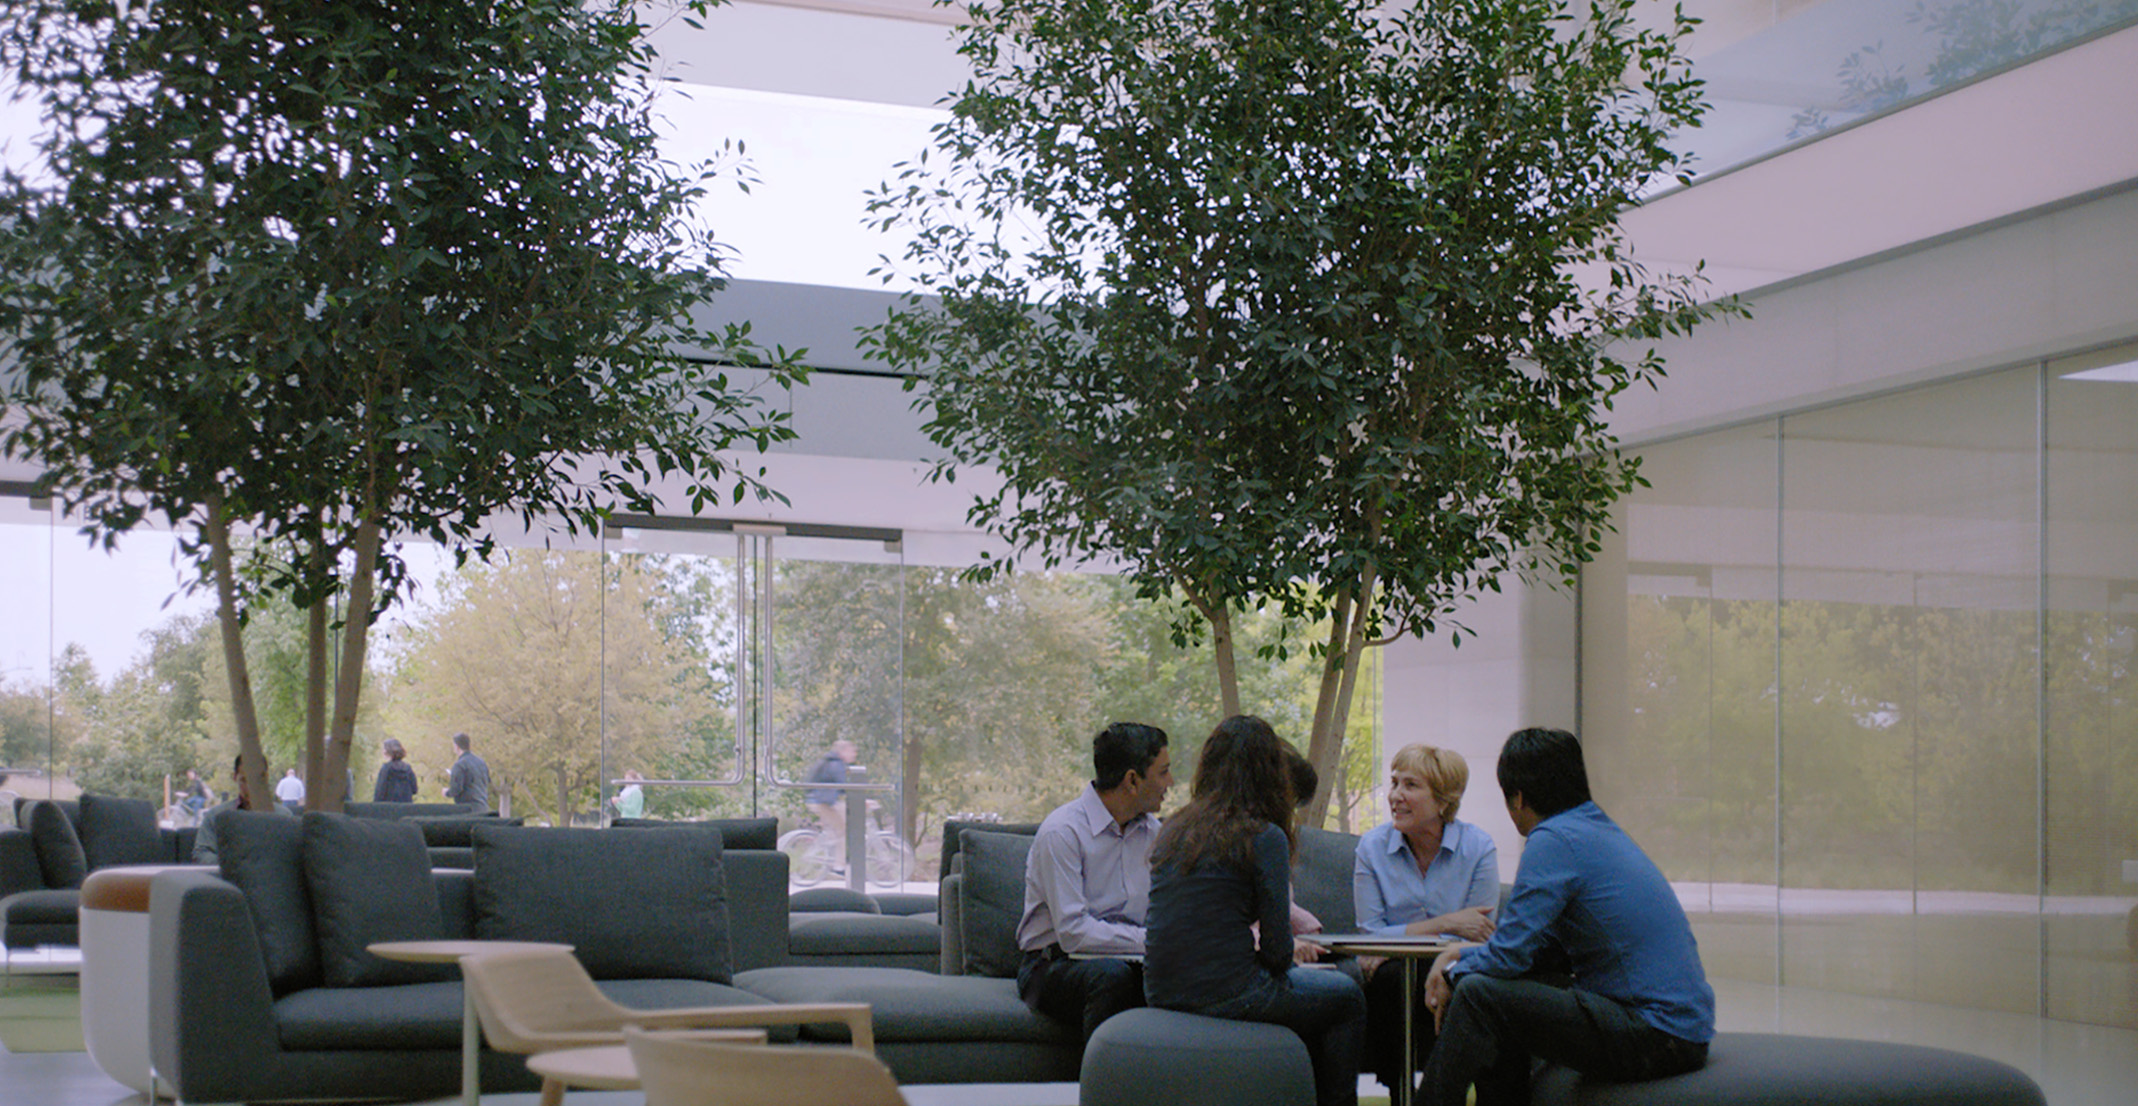 自然言語処理チームを率いるジュリアがほかのApple社員とテーブルに座っている。